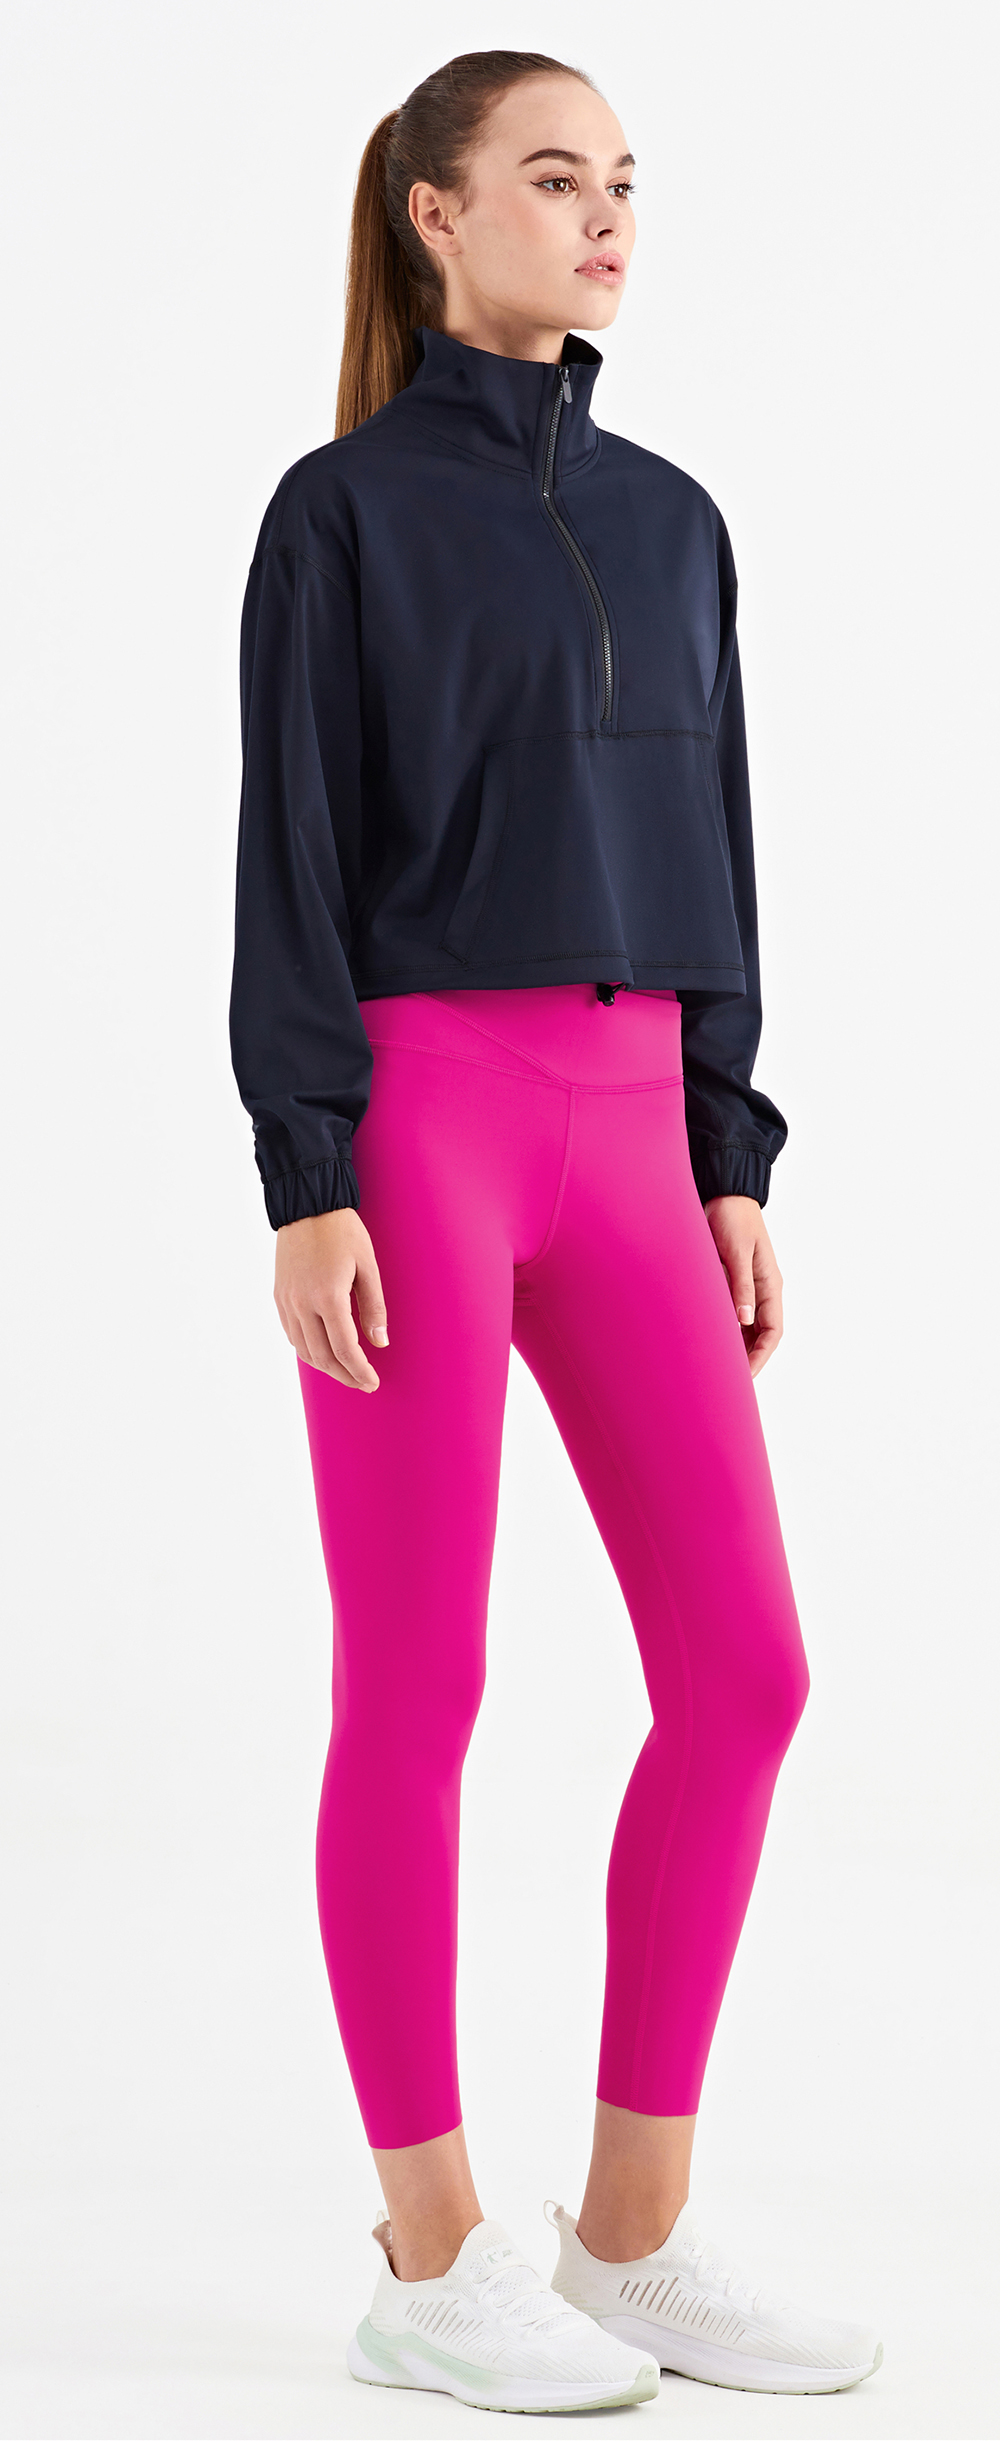 Hergymclothing long sleeve workout shirts black and pink yoga leggings